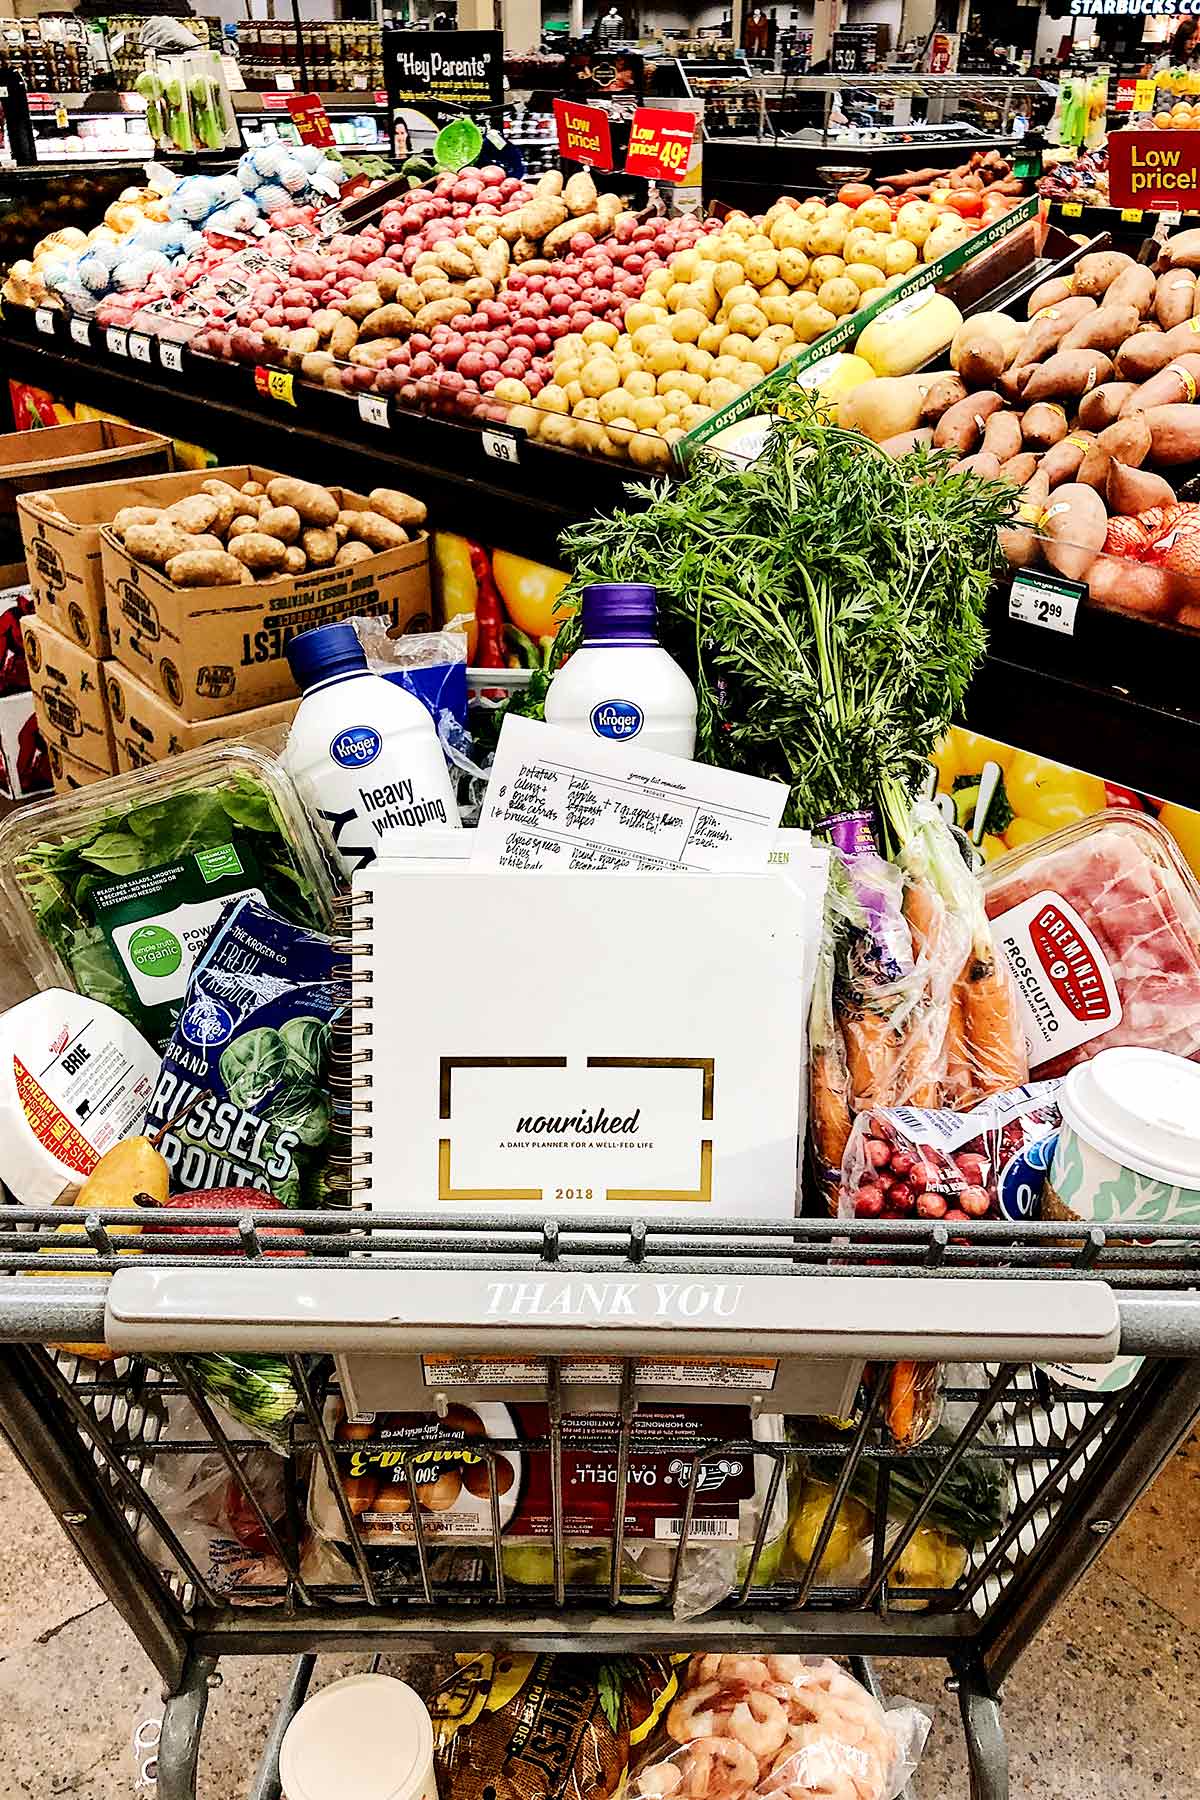 10 façons de gaspiller moins et d'économiser de l'argent à l'épicerie | foodiecrush.com #savemoney #groceries #shopping #budget